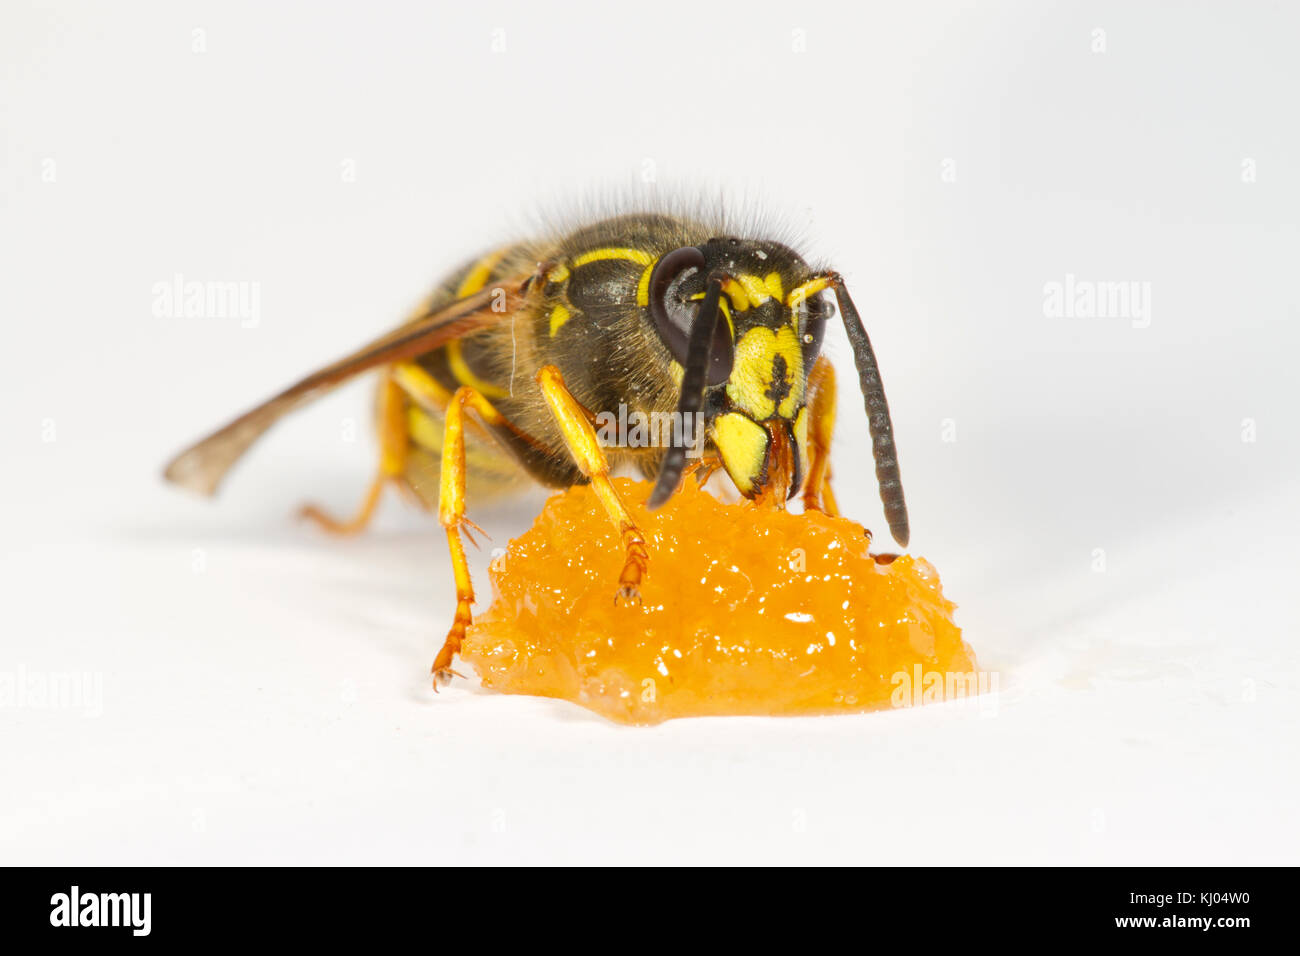 Guêpe Dolichovespula saxonica (Saxon) travailleur adulte se nourrit de miel sur un fond blanc. Powys, Pays de Galles. En août. Banque D'Images